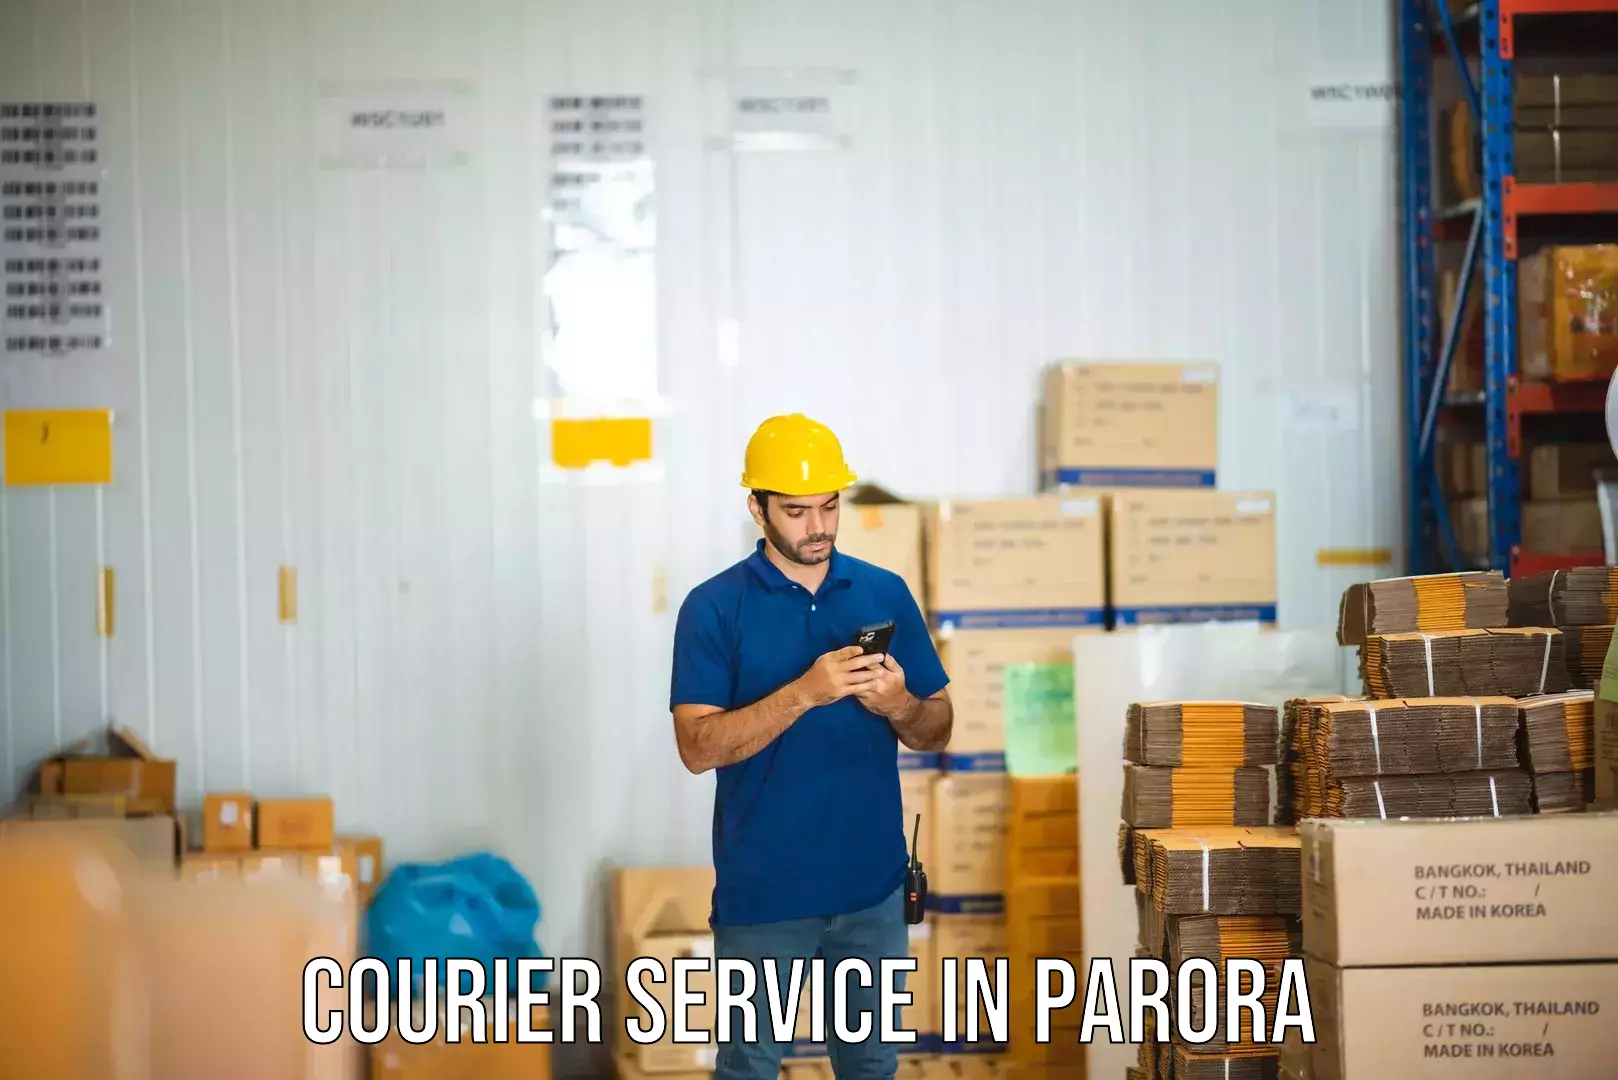 Scheduled delivery in Parora